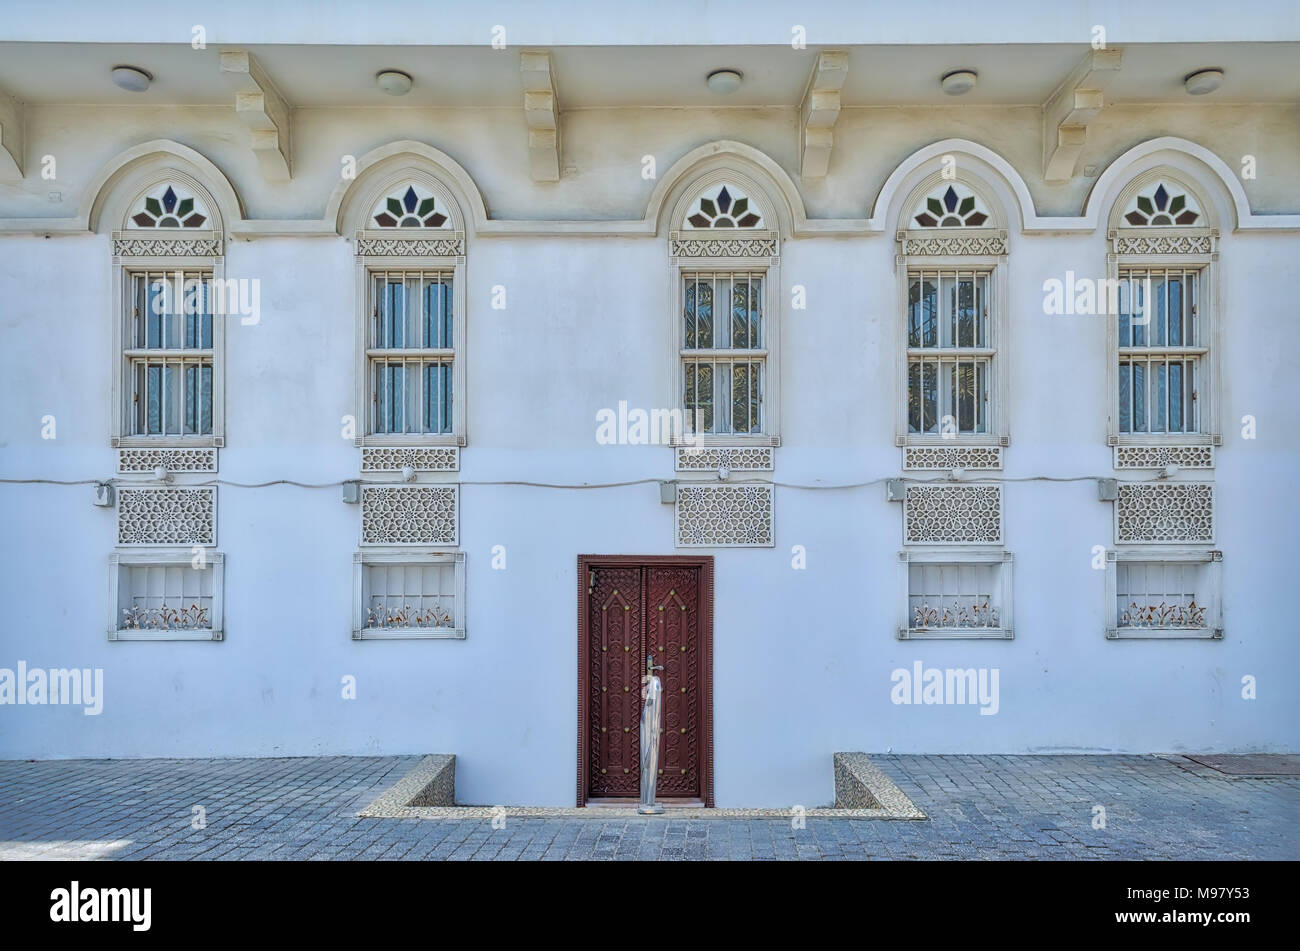 Die alten, traditionellen, arabischen Stil Fenster und Türen an der Vorderseite des Hauses - Muscat, Oman. Stockfoto